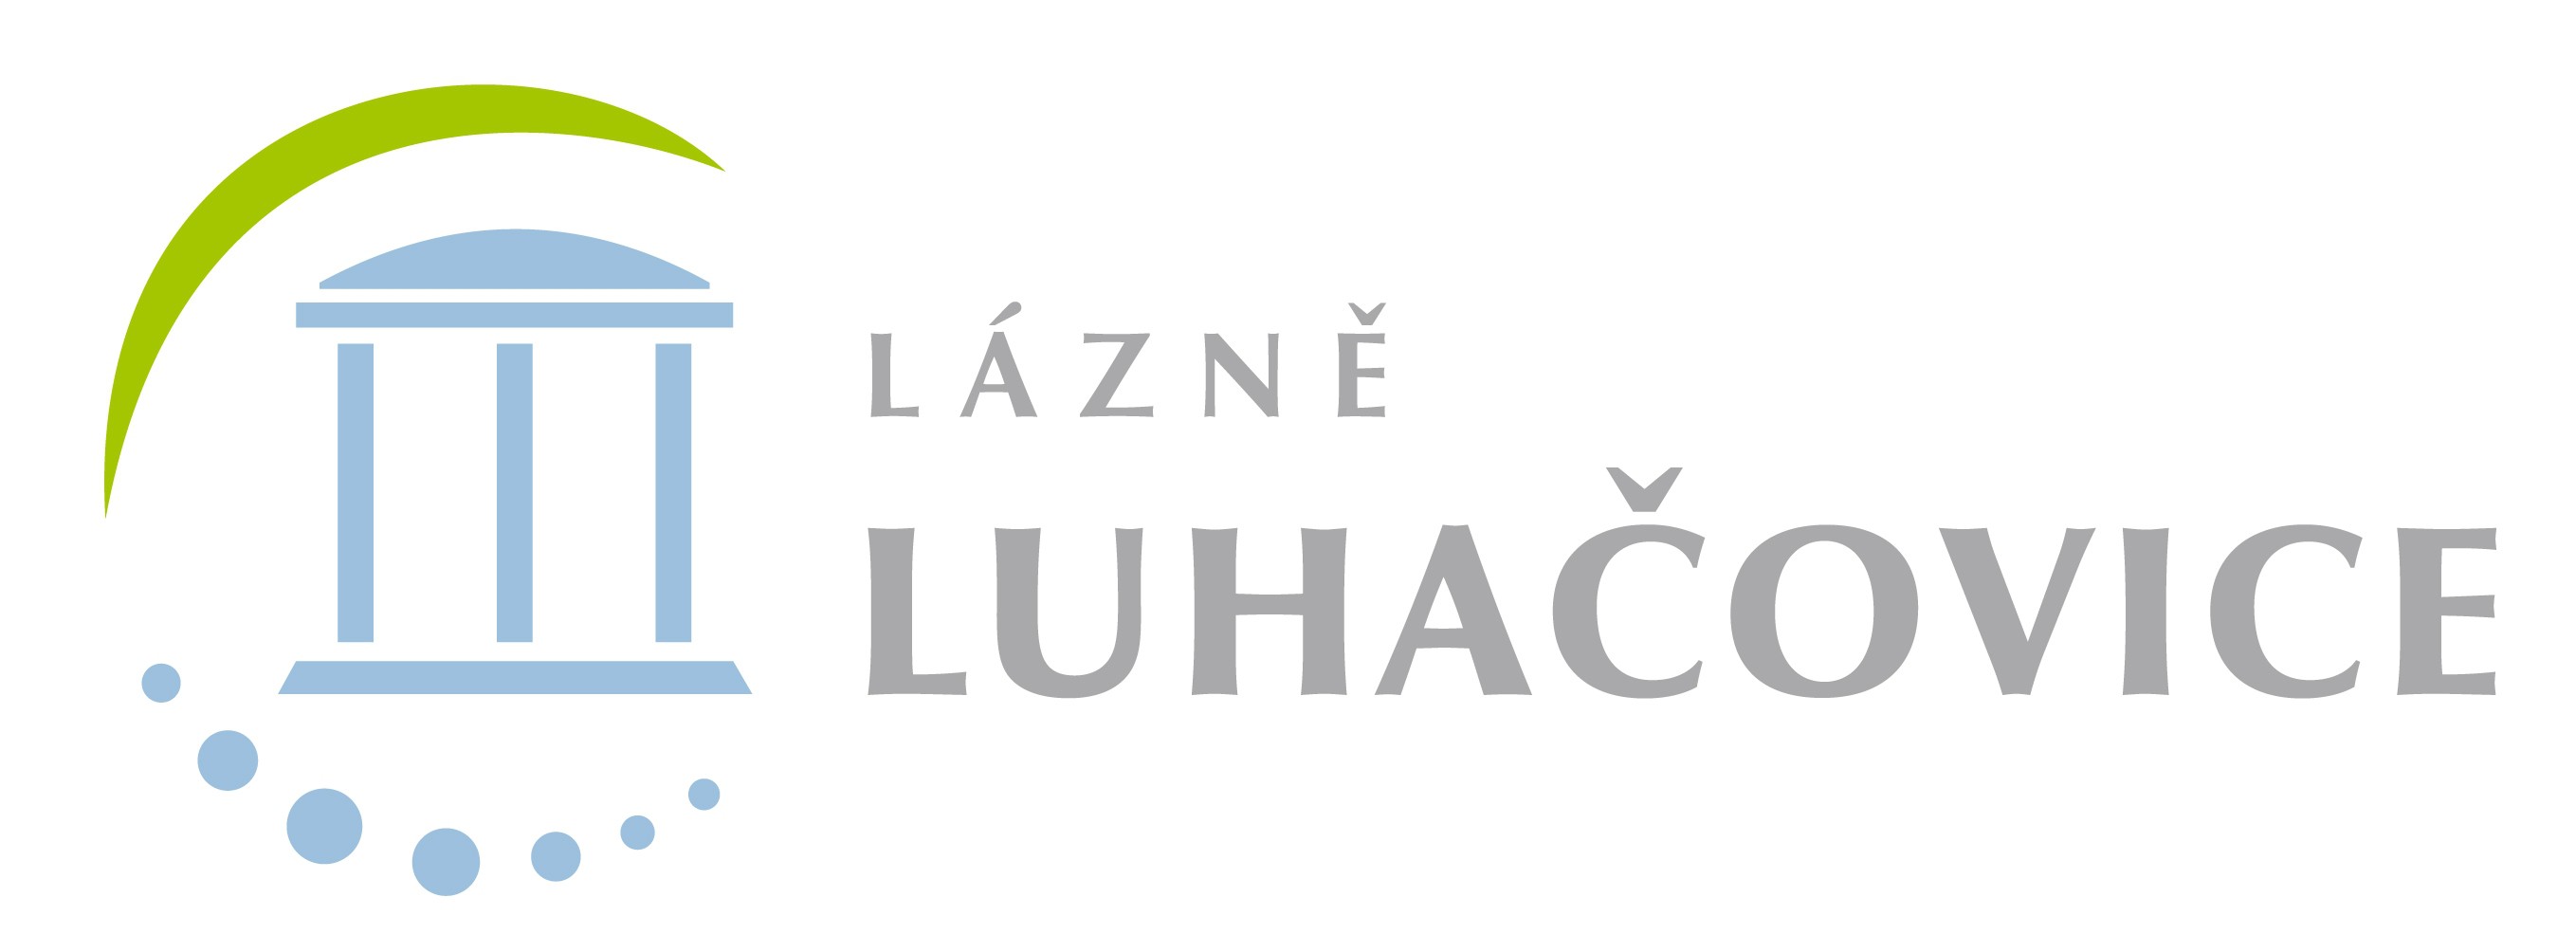 Luhacky logo